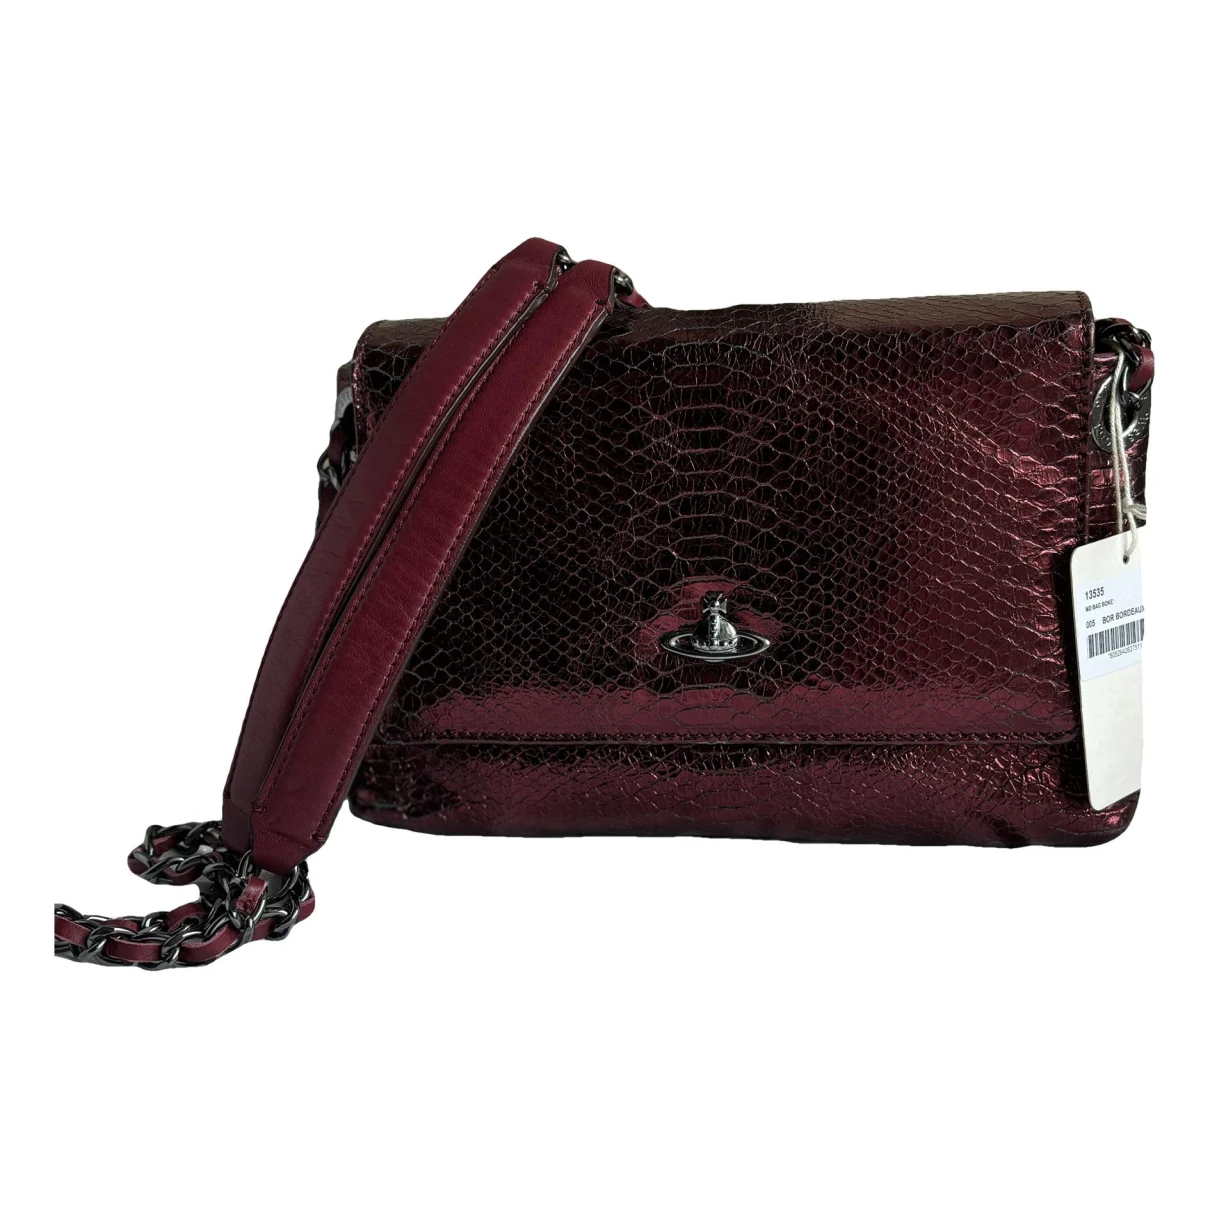 Pre-owned Vivienne Westwood Leather Handbag In Burgundy